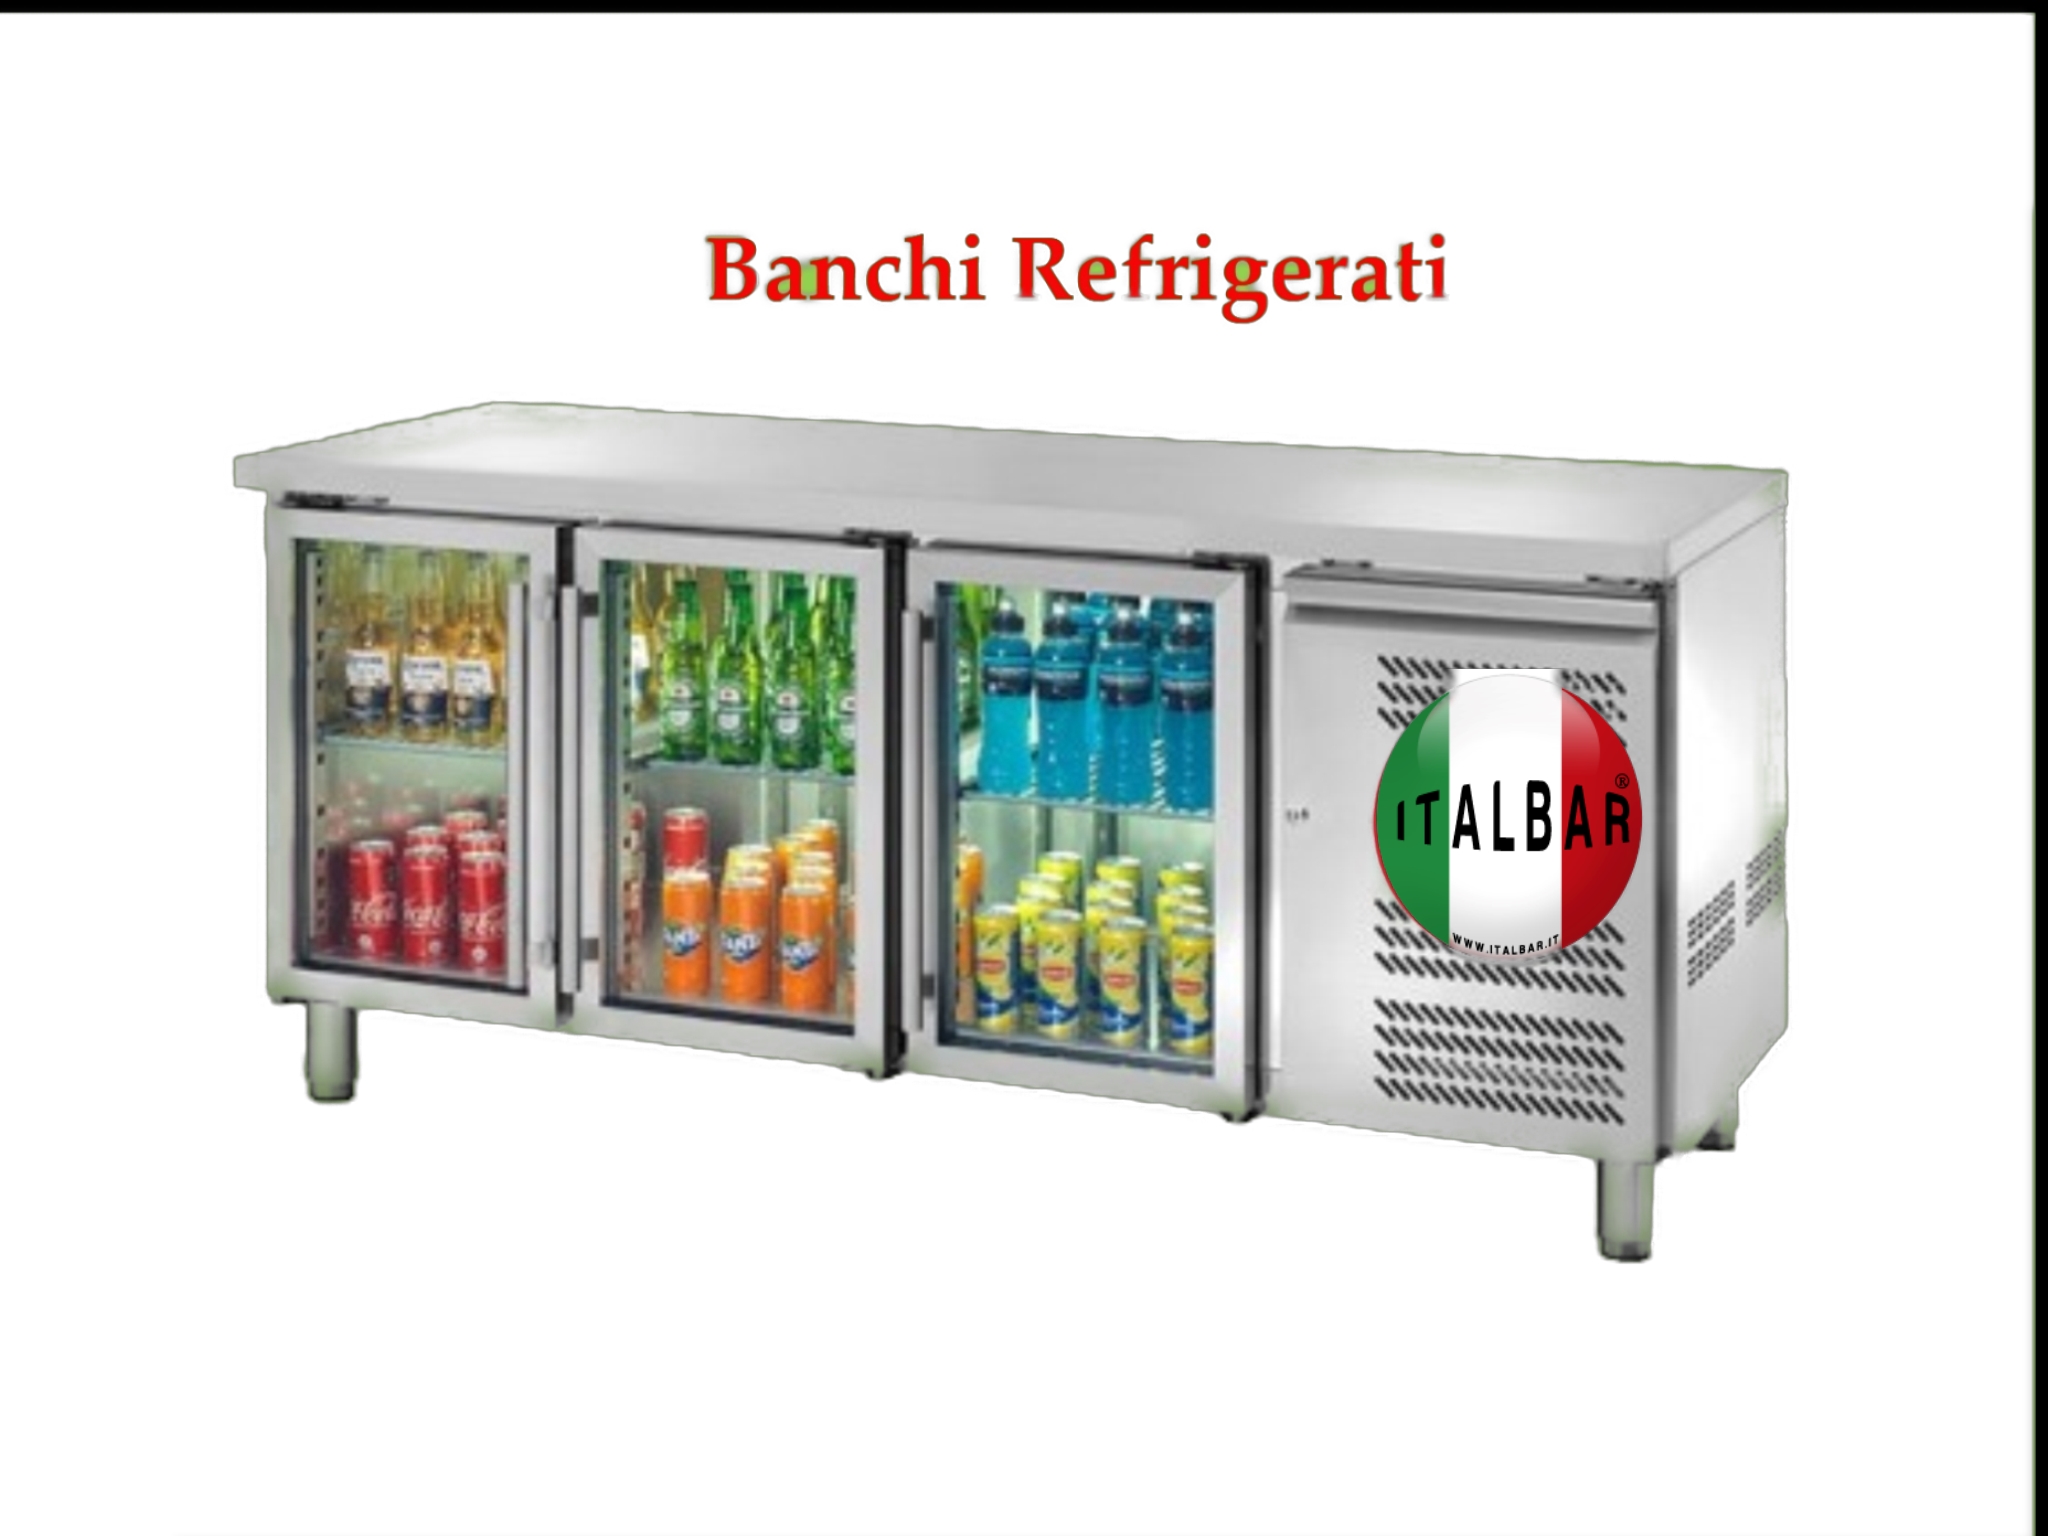 https://italbar.eu/wp-content/uploads/2020/12/Banco-refrigerato-con-3-porte-in-vetro-Prezzo-Banchi-refrigerati-con-3-porte-in-vetro-Tavolo-refrigerato-con-3-porte-in-vetro-Banco-refrigerato-con-3-porte-in-vetro-torino-bergamo.jpg